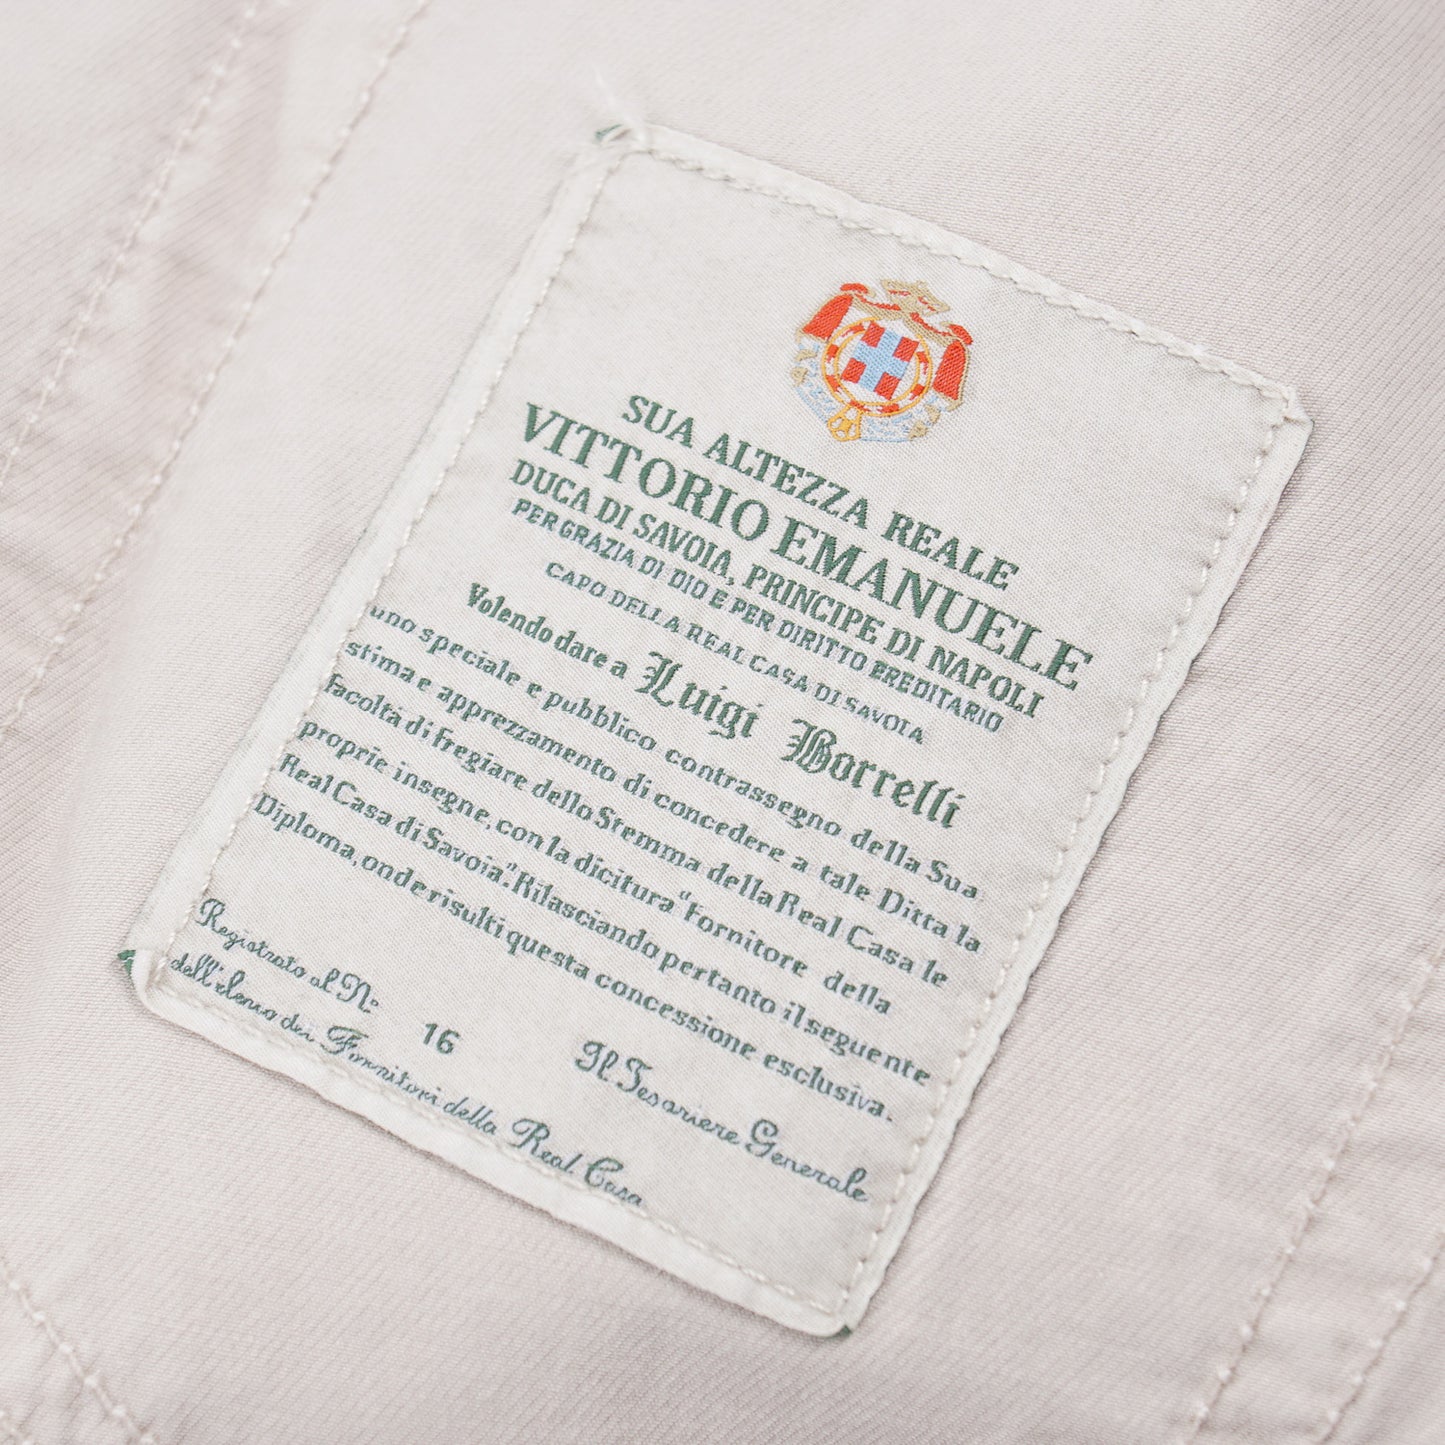 Luigi Borrelli Slim-Fit Lightweight Cotton Jeans - Top Shelf Apparel